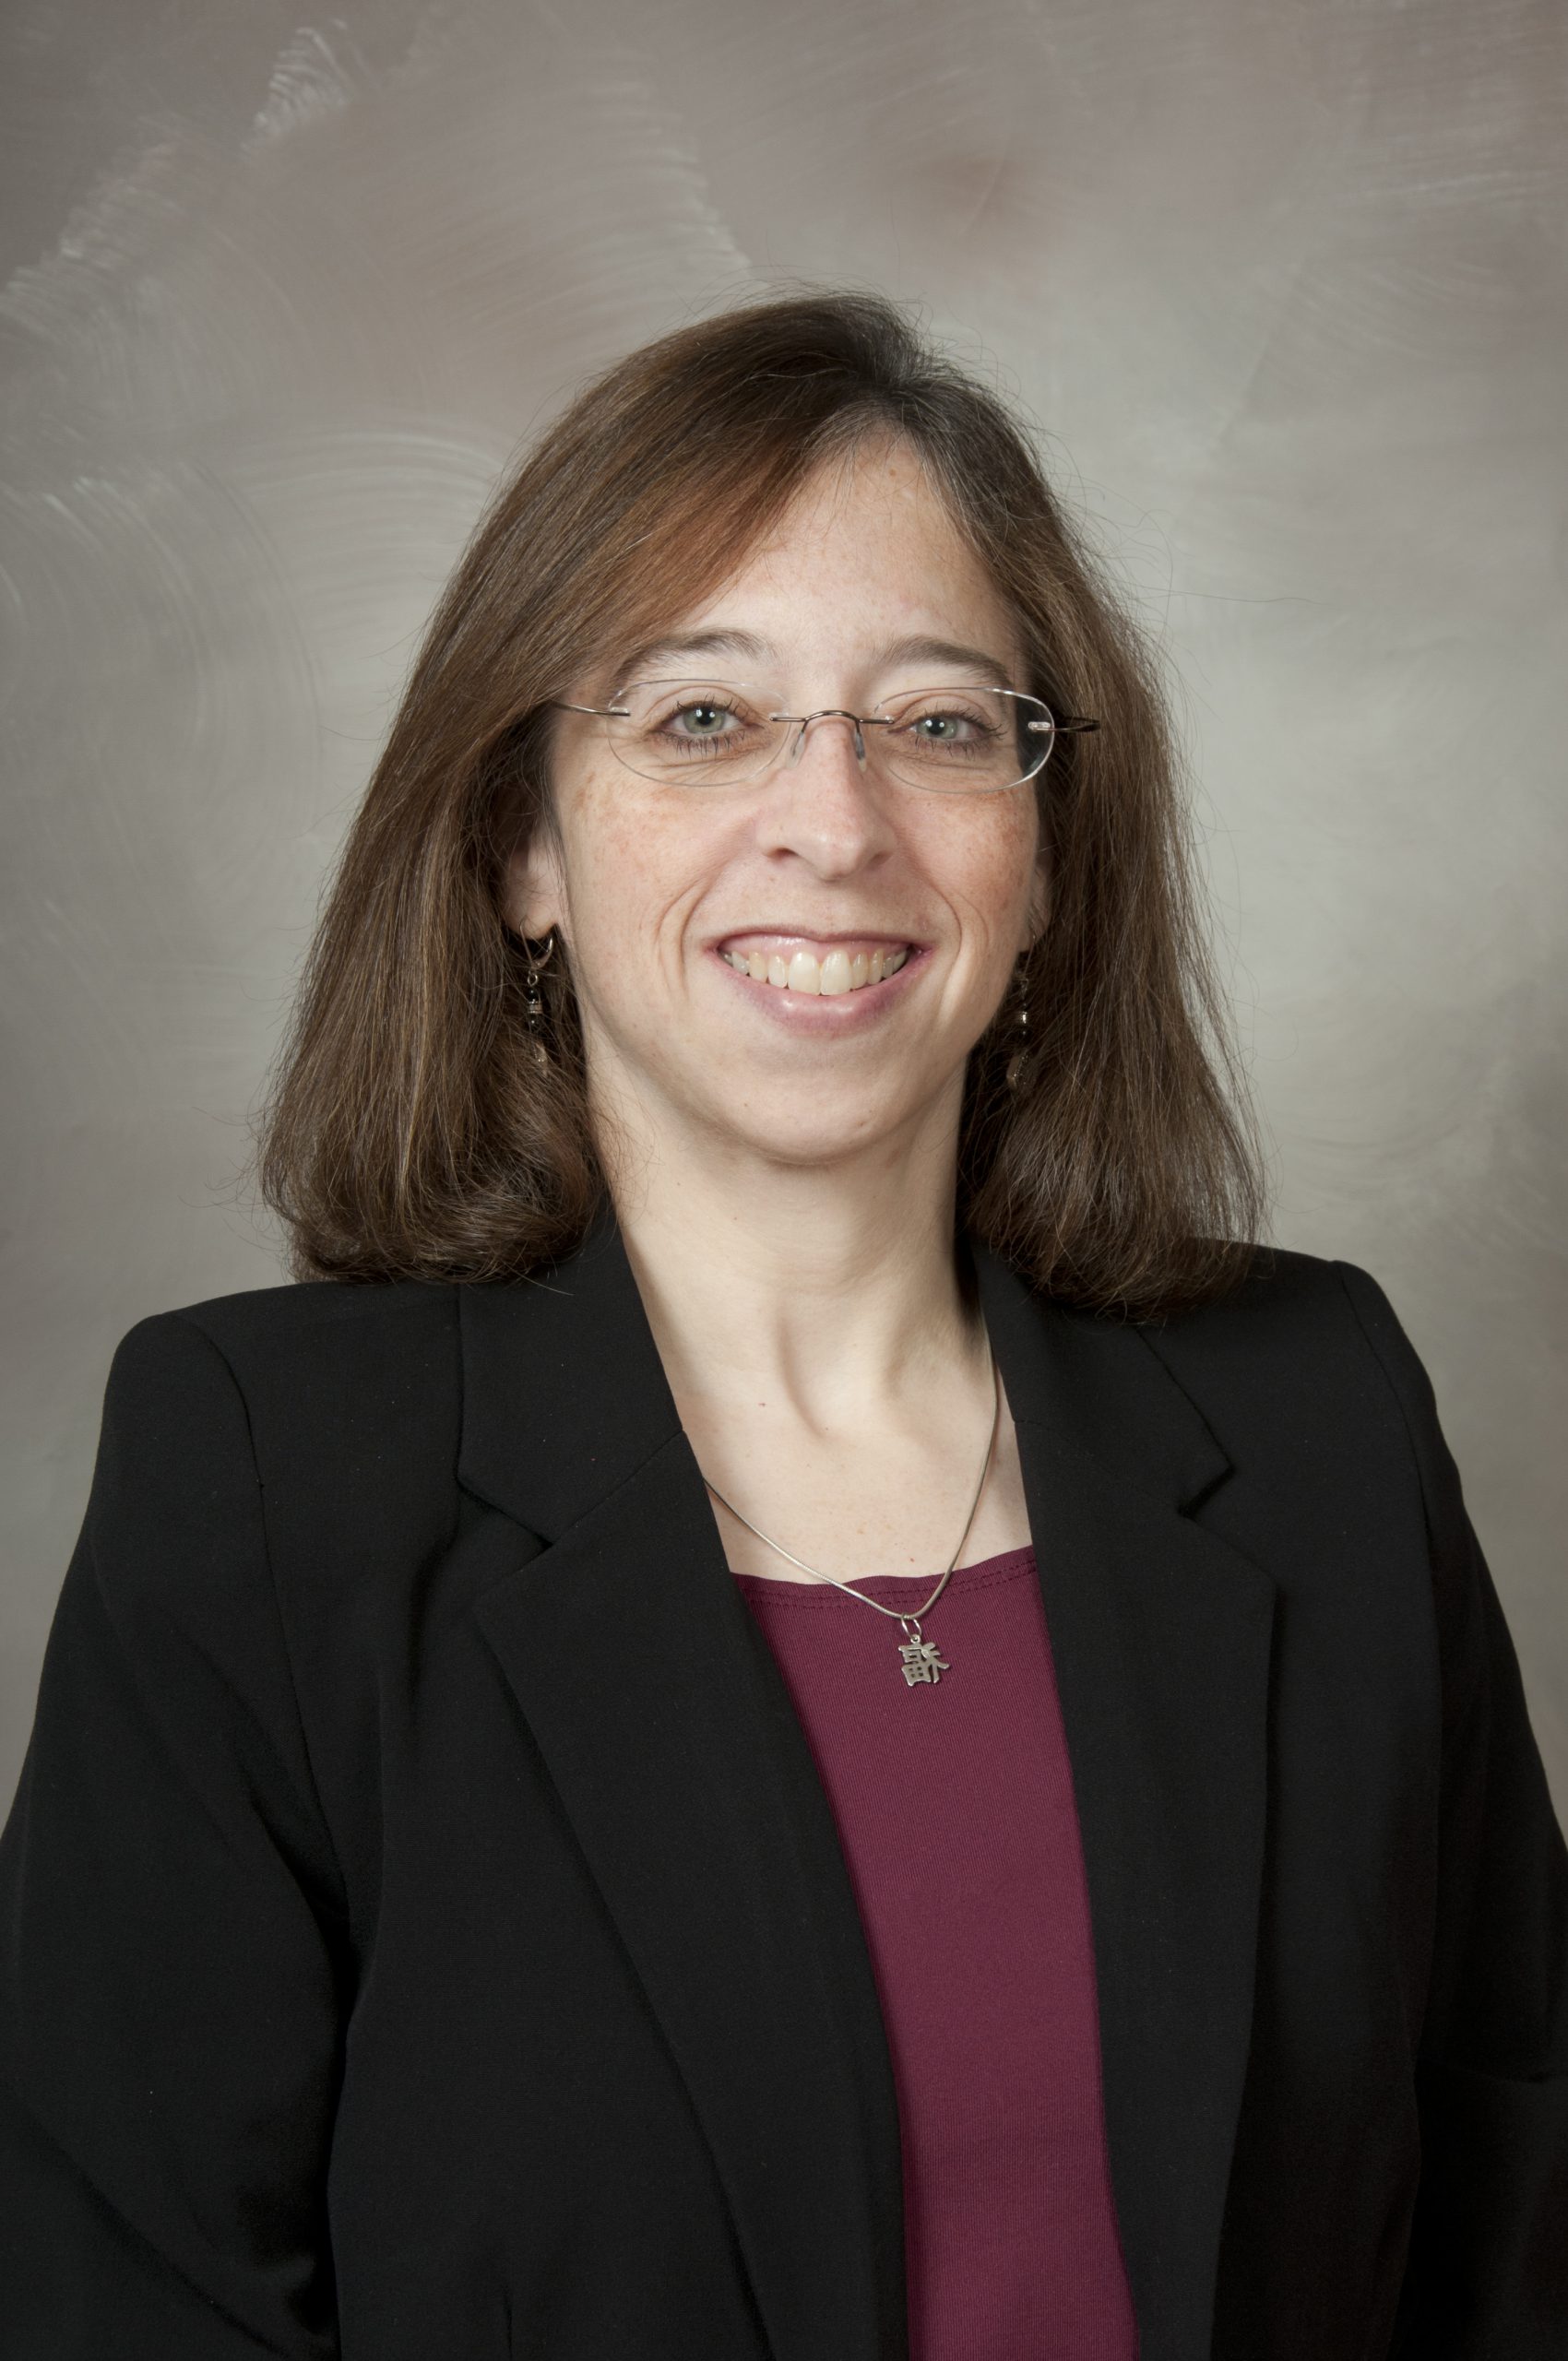 Cathy L. Guttentag, PhD